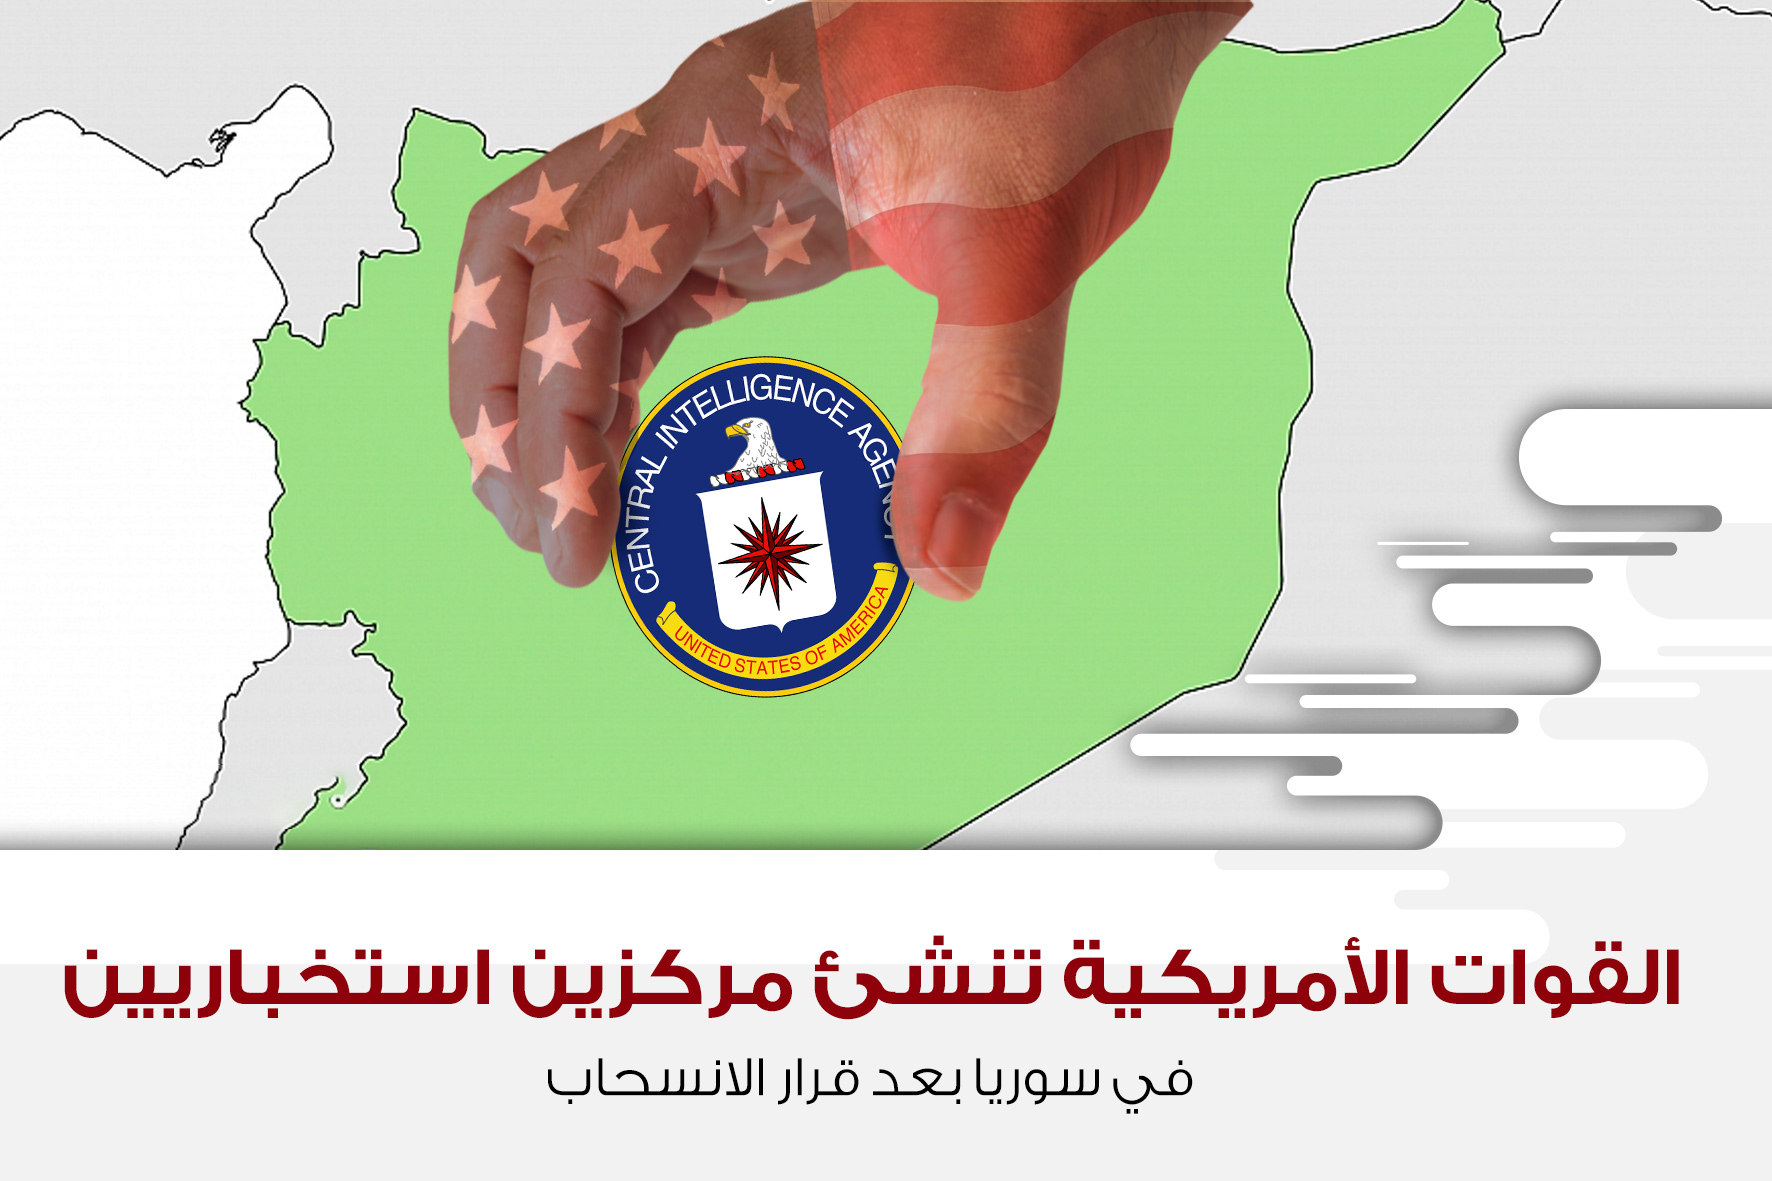 القوات الأمريكية تُنشئ مركزين استخباريين في سوريا بعد قرار الانسحاب